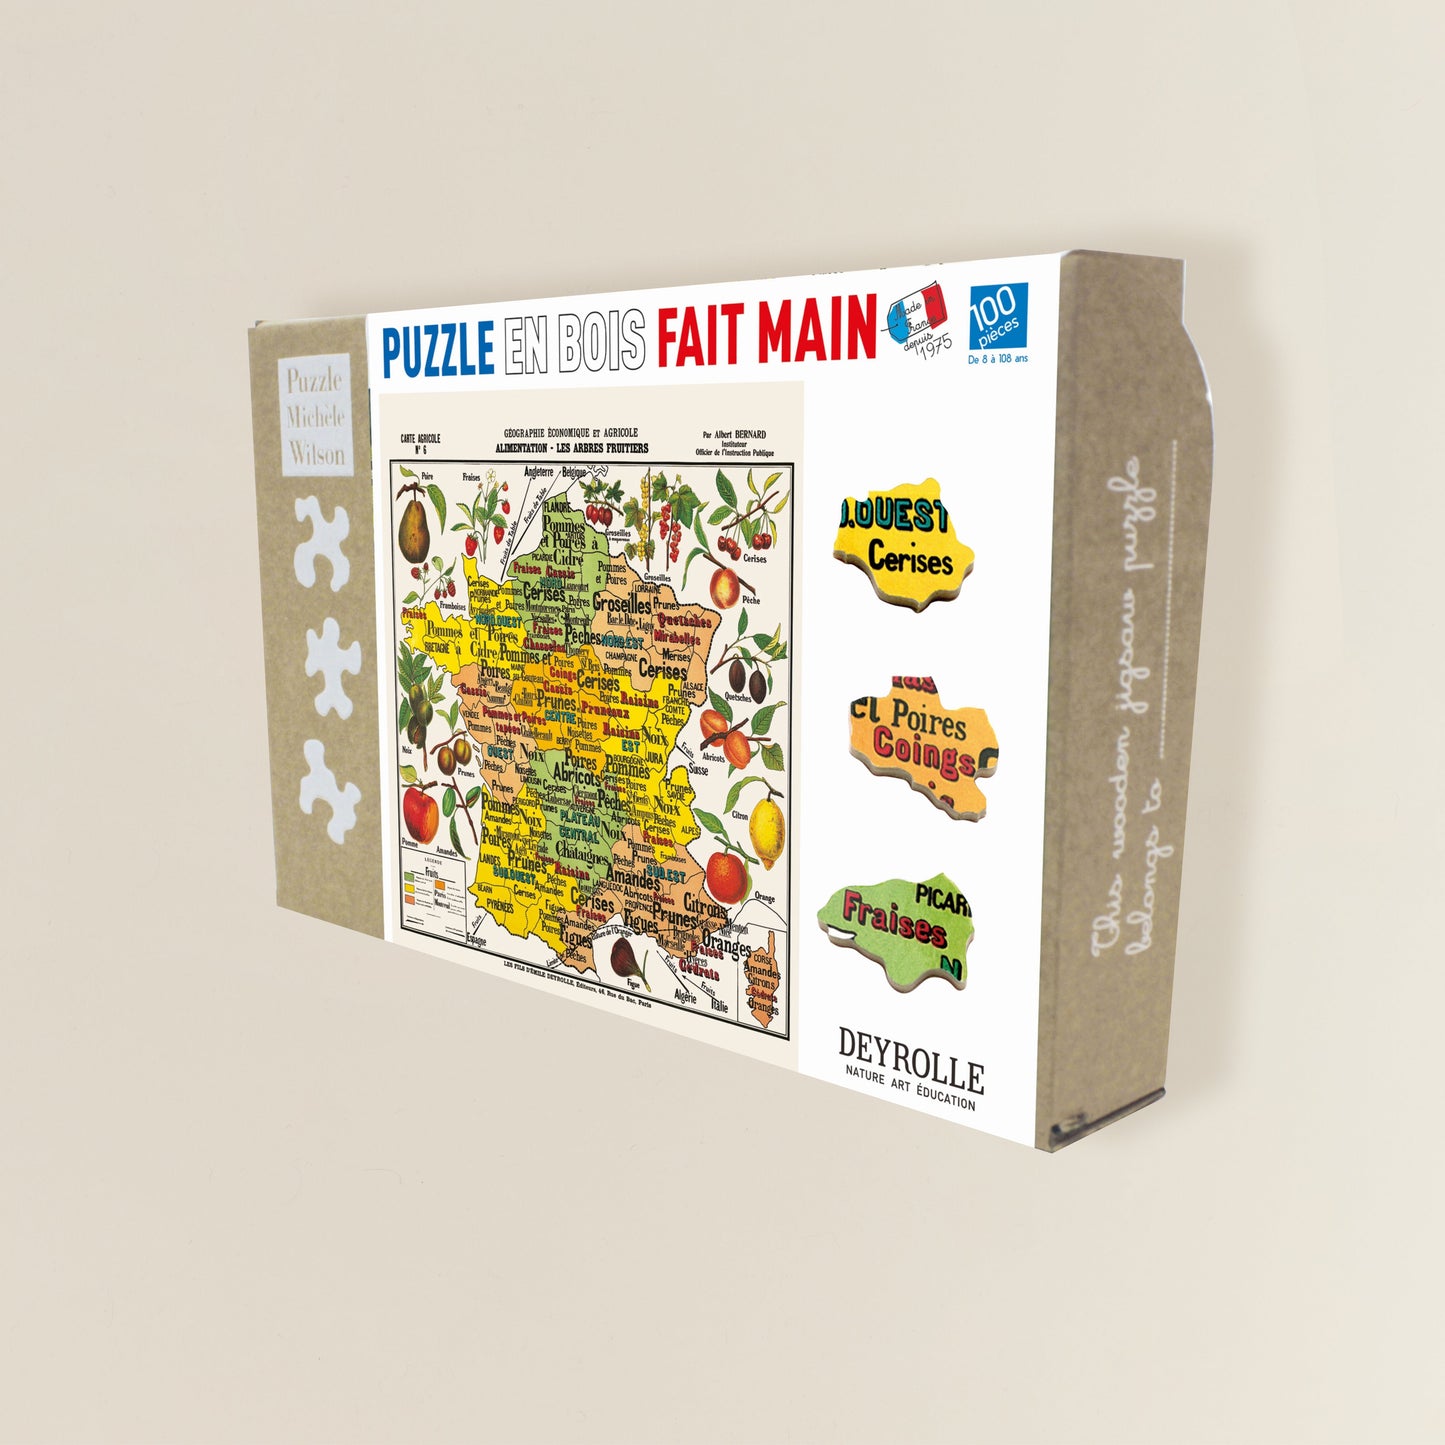 Puzzle Michèle Wilson - Carte de France des Fruits